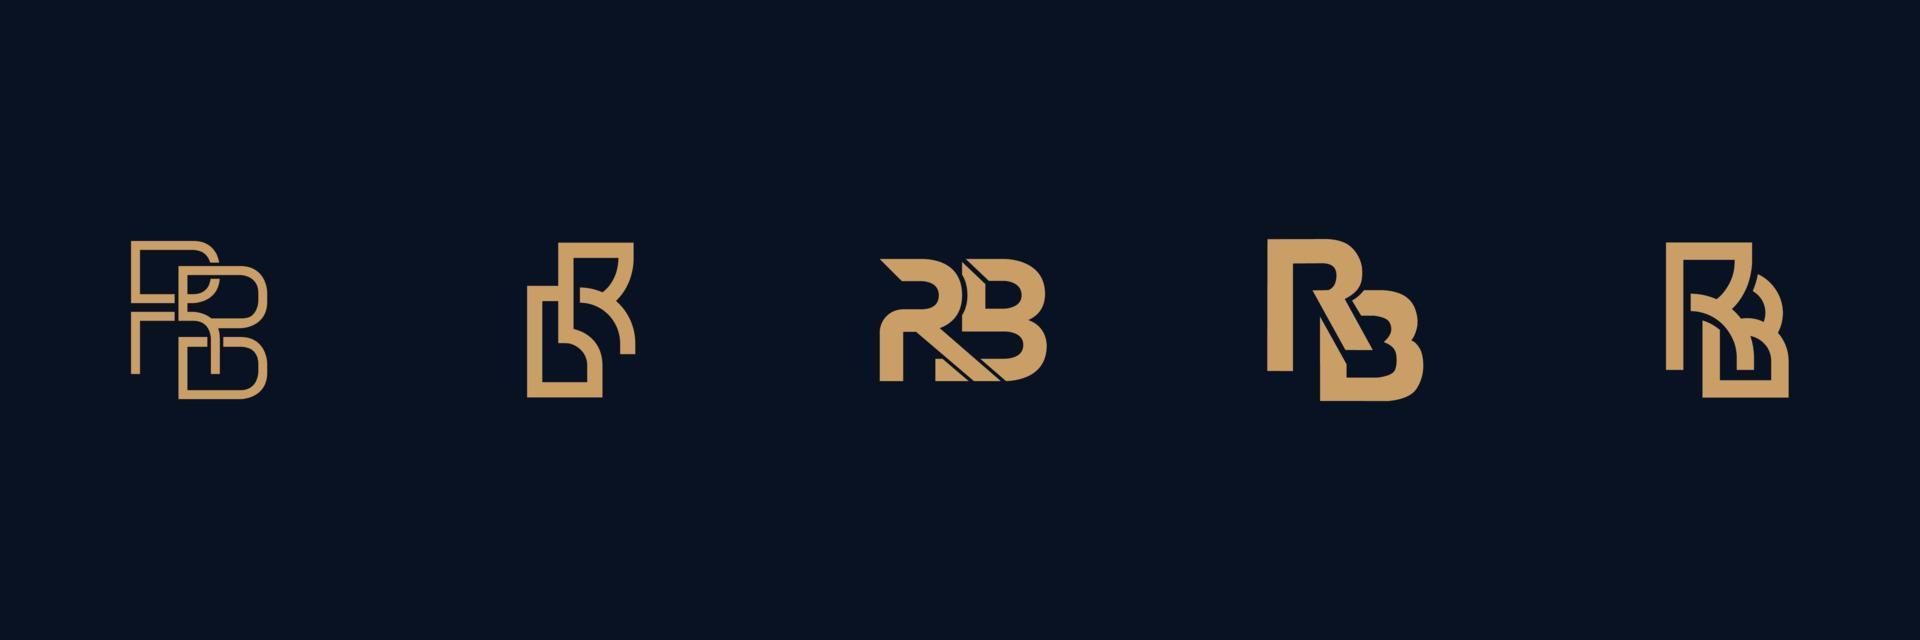 br criativo, design de vetor de logotipo de letra rb com três cores